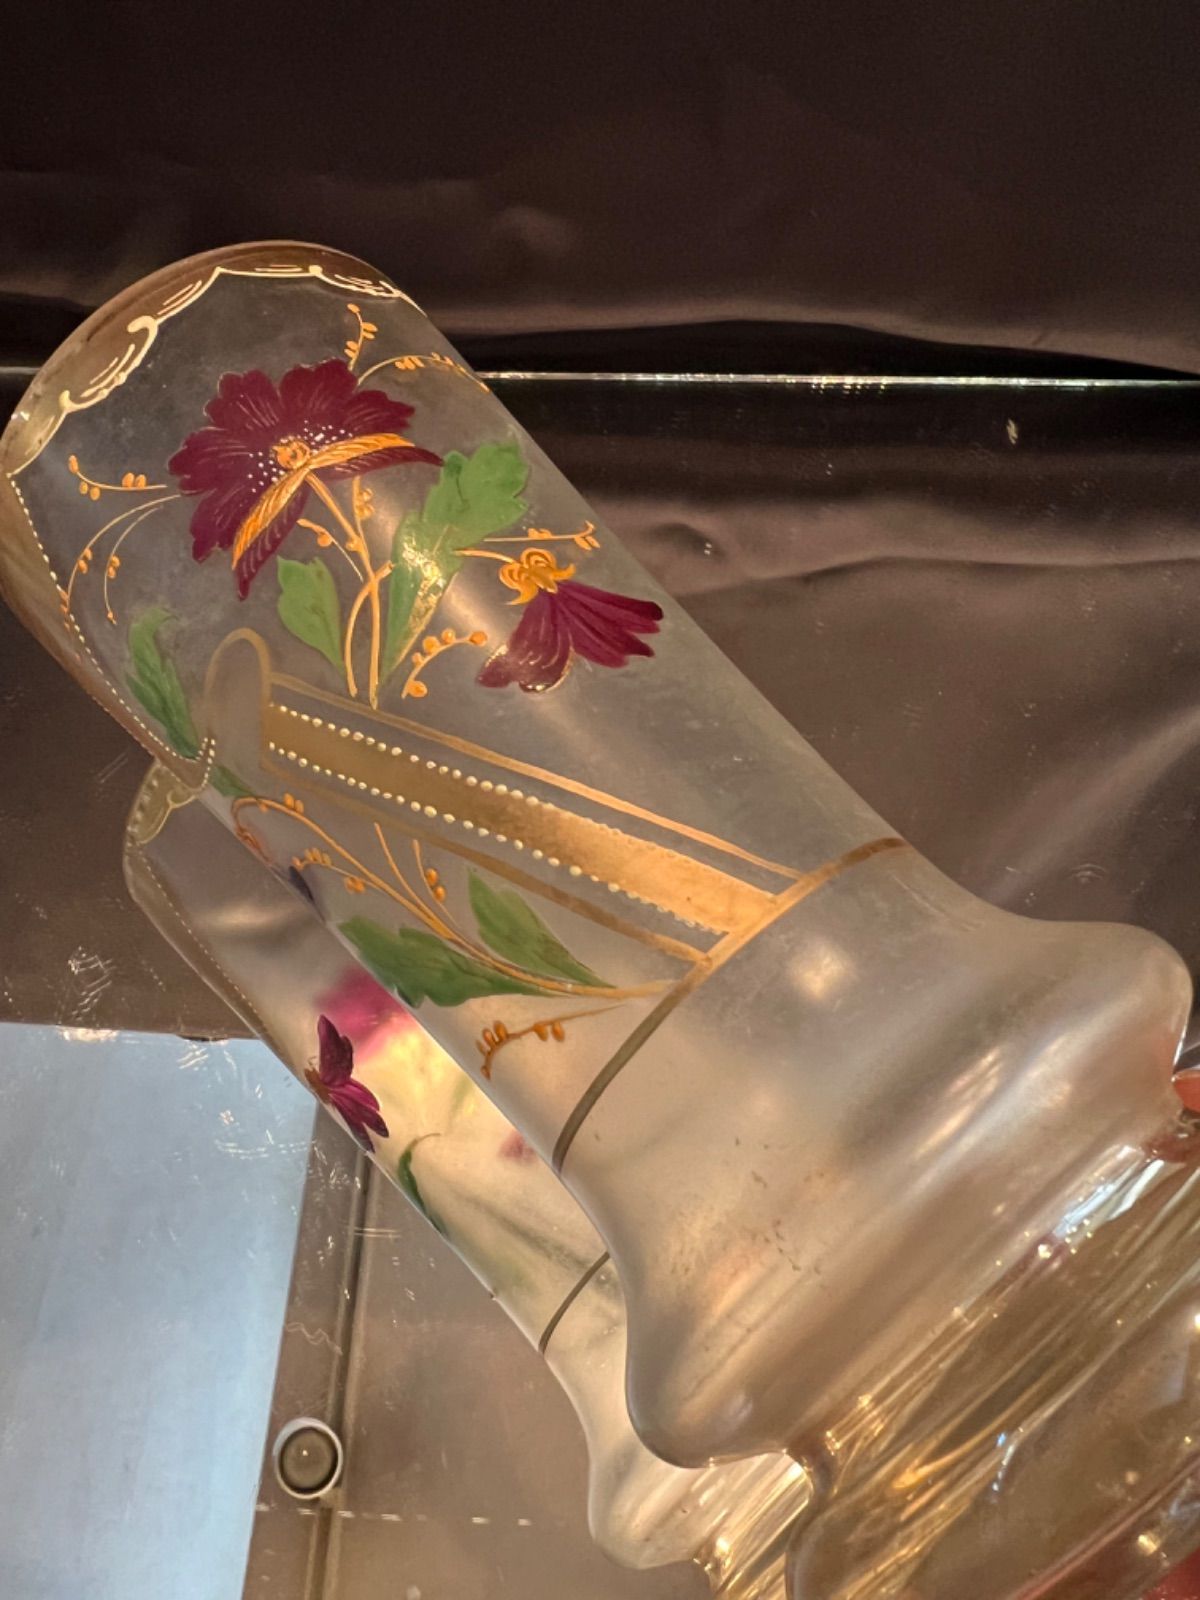 ボヘミア ハンドペイントタンブラー(大) 20世紀初頭 カメイガラス